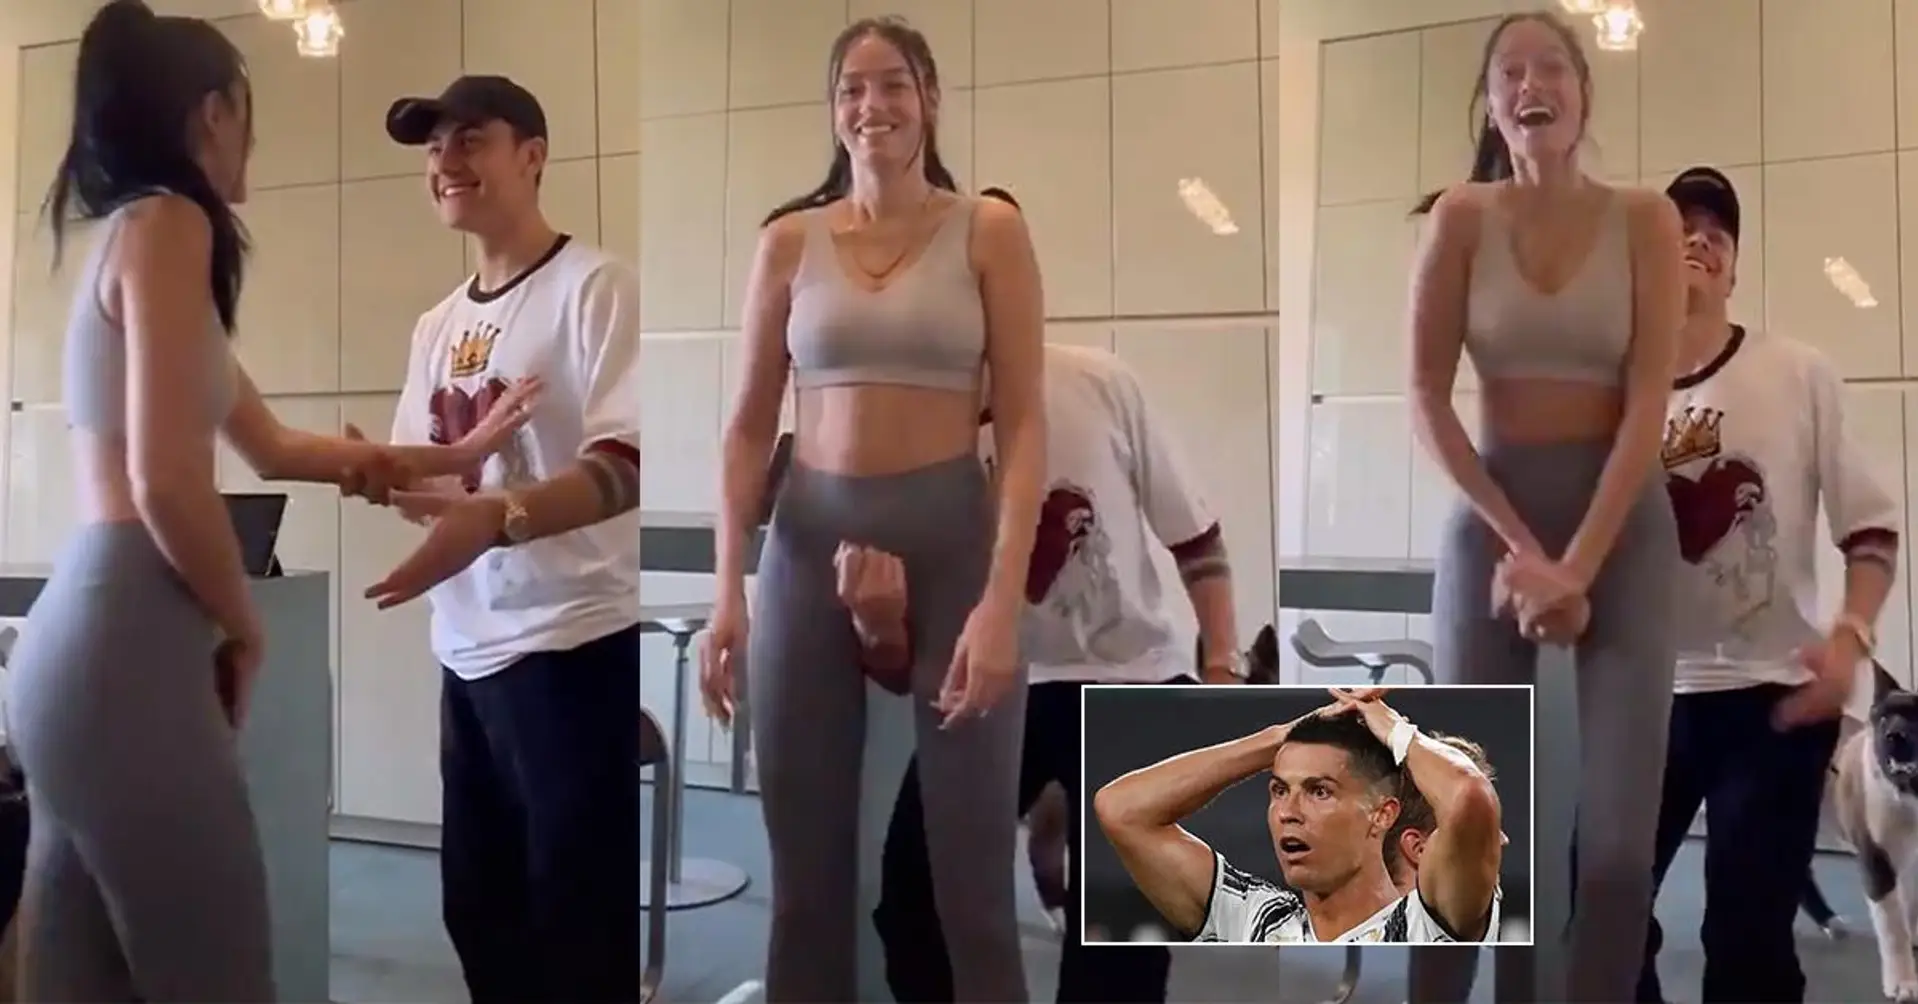 Paulo Dybala et sa petite amie mettent en ligne une vidéo "inappropriée" de Crotch Lift, TikTok l'a immédiatement supprimée